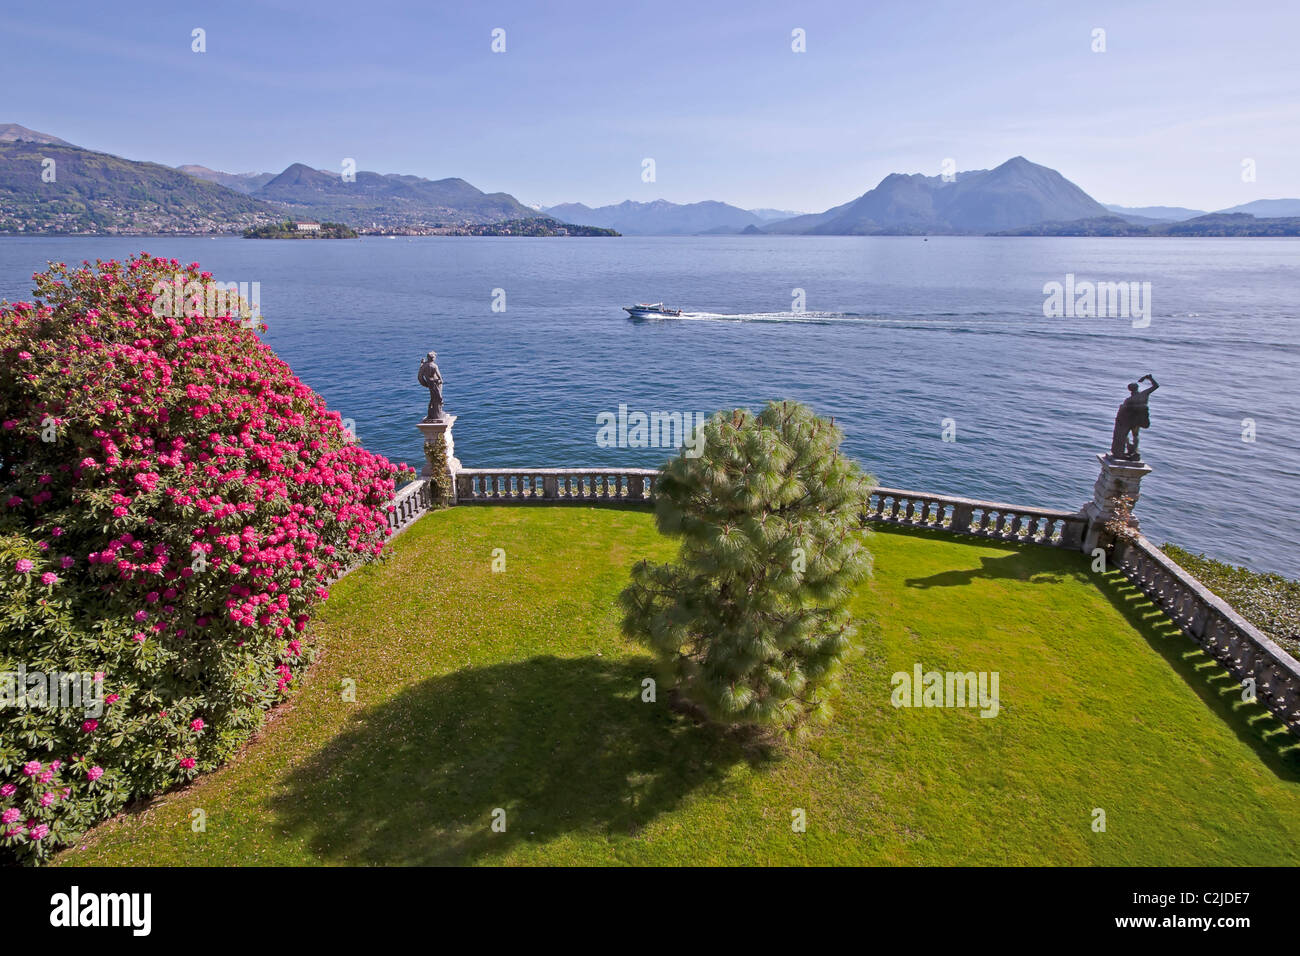 Isola Bella - Italy - Lake Maggiore Stock Photo